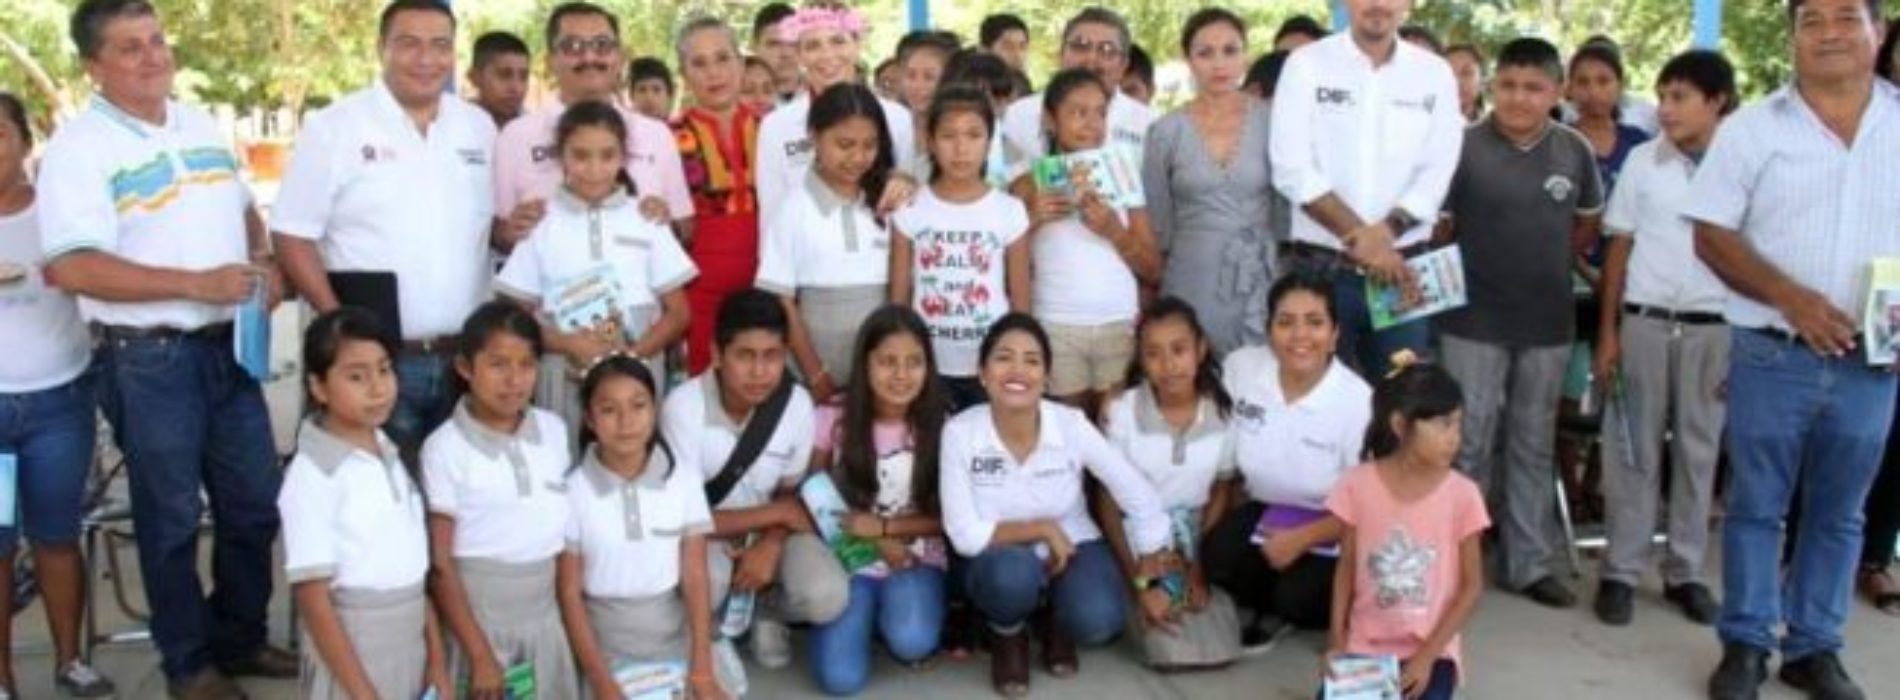 Ivette Morán de Murat cumple su palabra con estudiantes y
maestros de “El Coco” en Santa María Tonameca